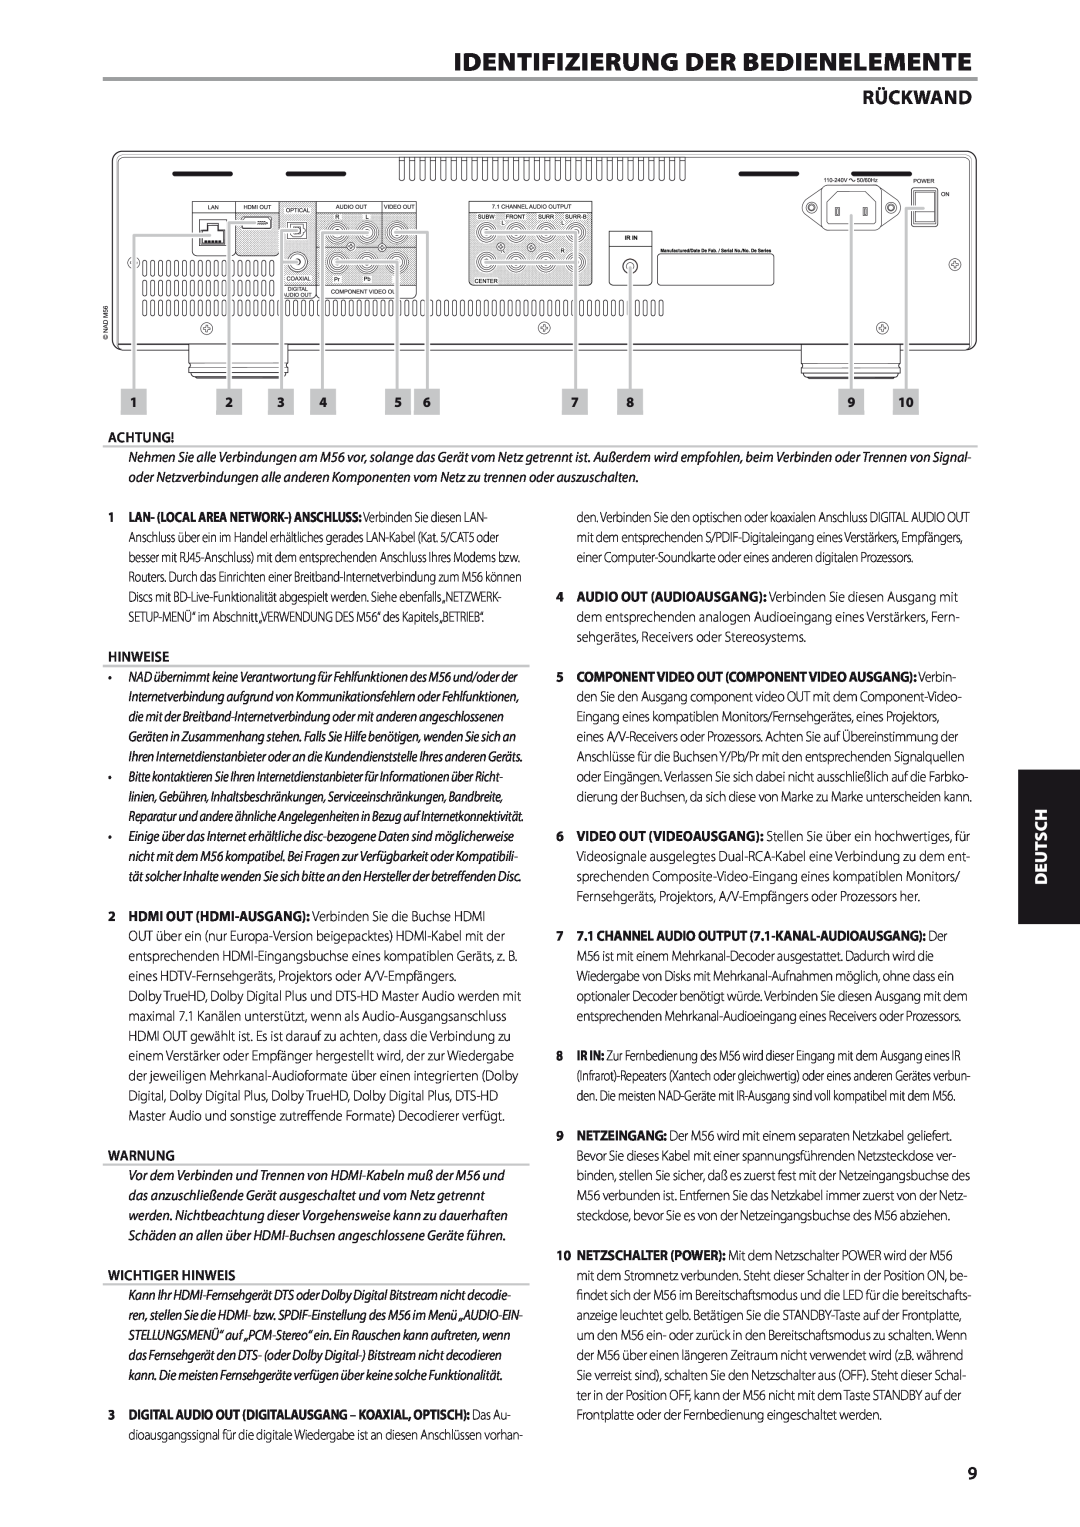 NAD M56 manual Rückwand, Achtung, Wichtiger Hinweis, Identifizierung Der Bedienelemente, Deutsch, Hinweise, Warnung 